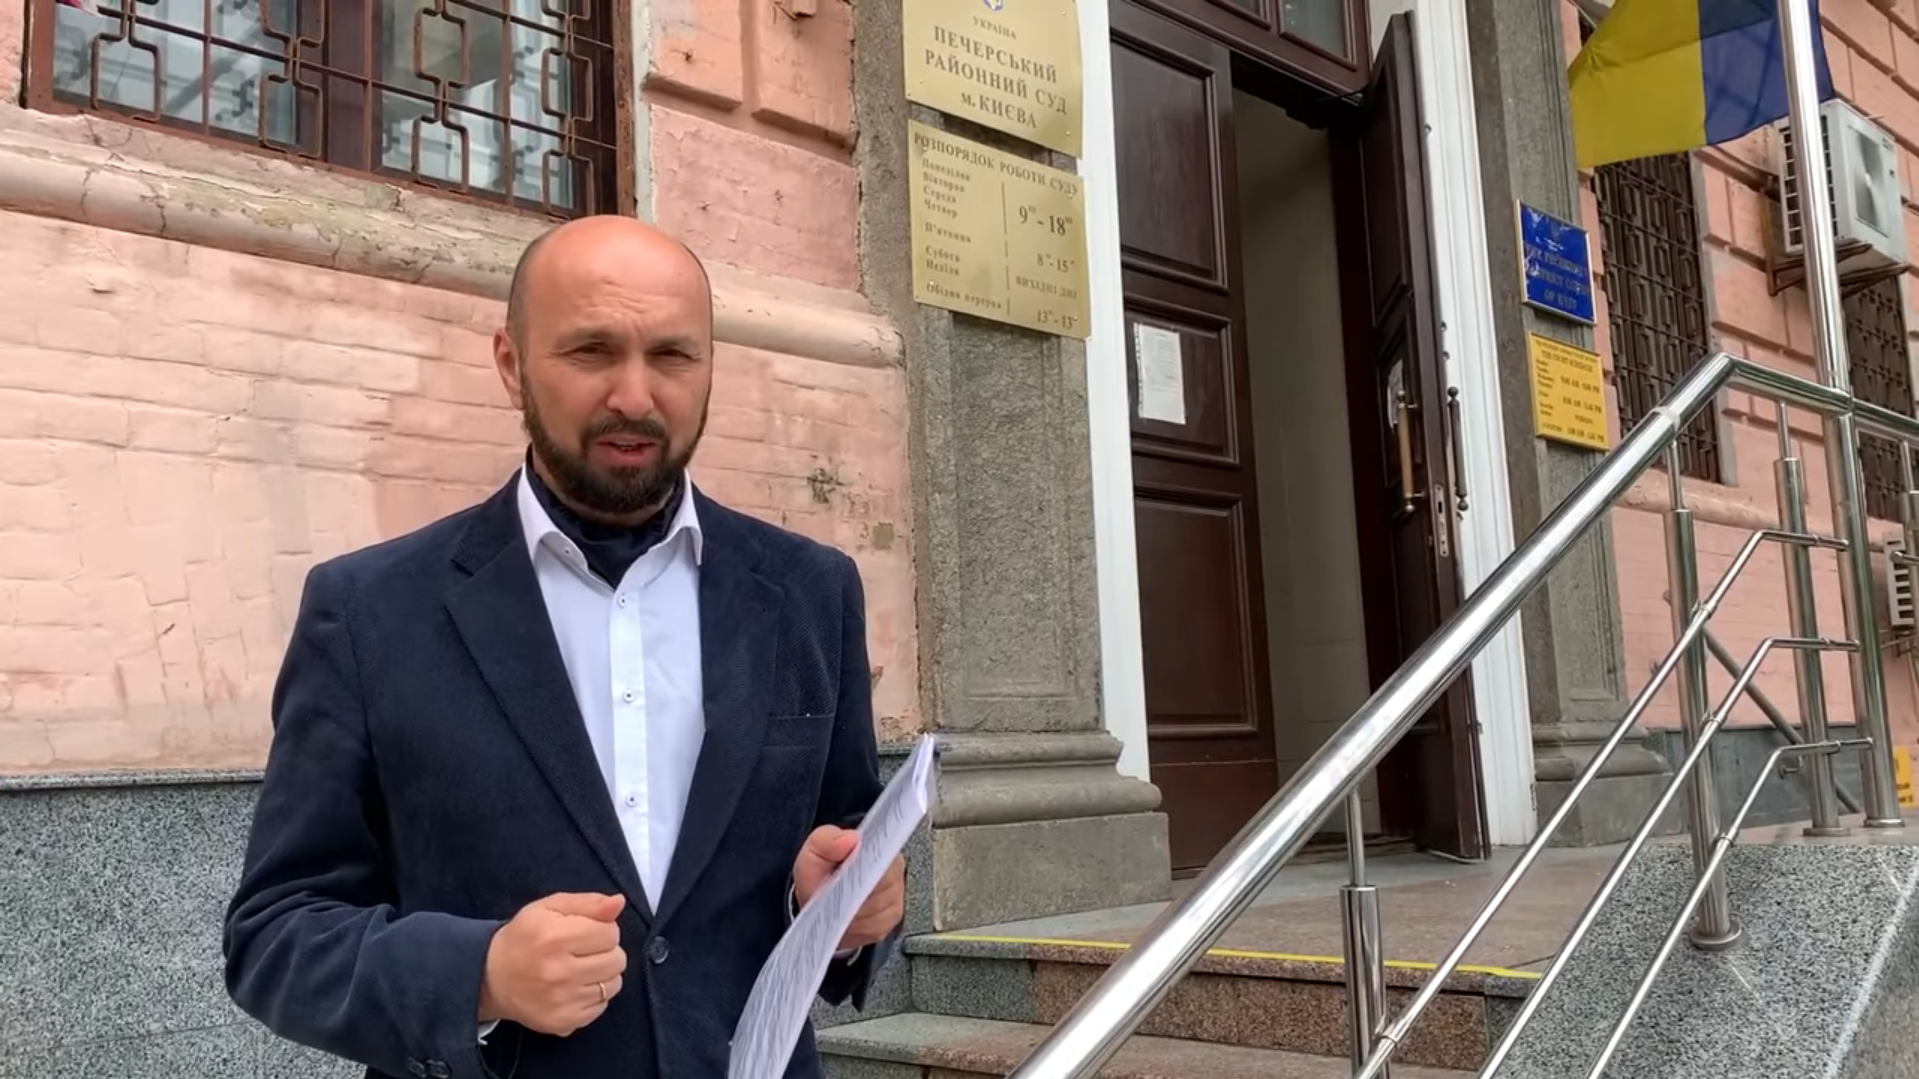 Міський голова Черкас подав позов проти Зеленського та вимагає 1 гривню компенсації — адвокат